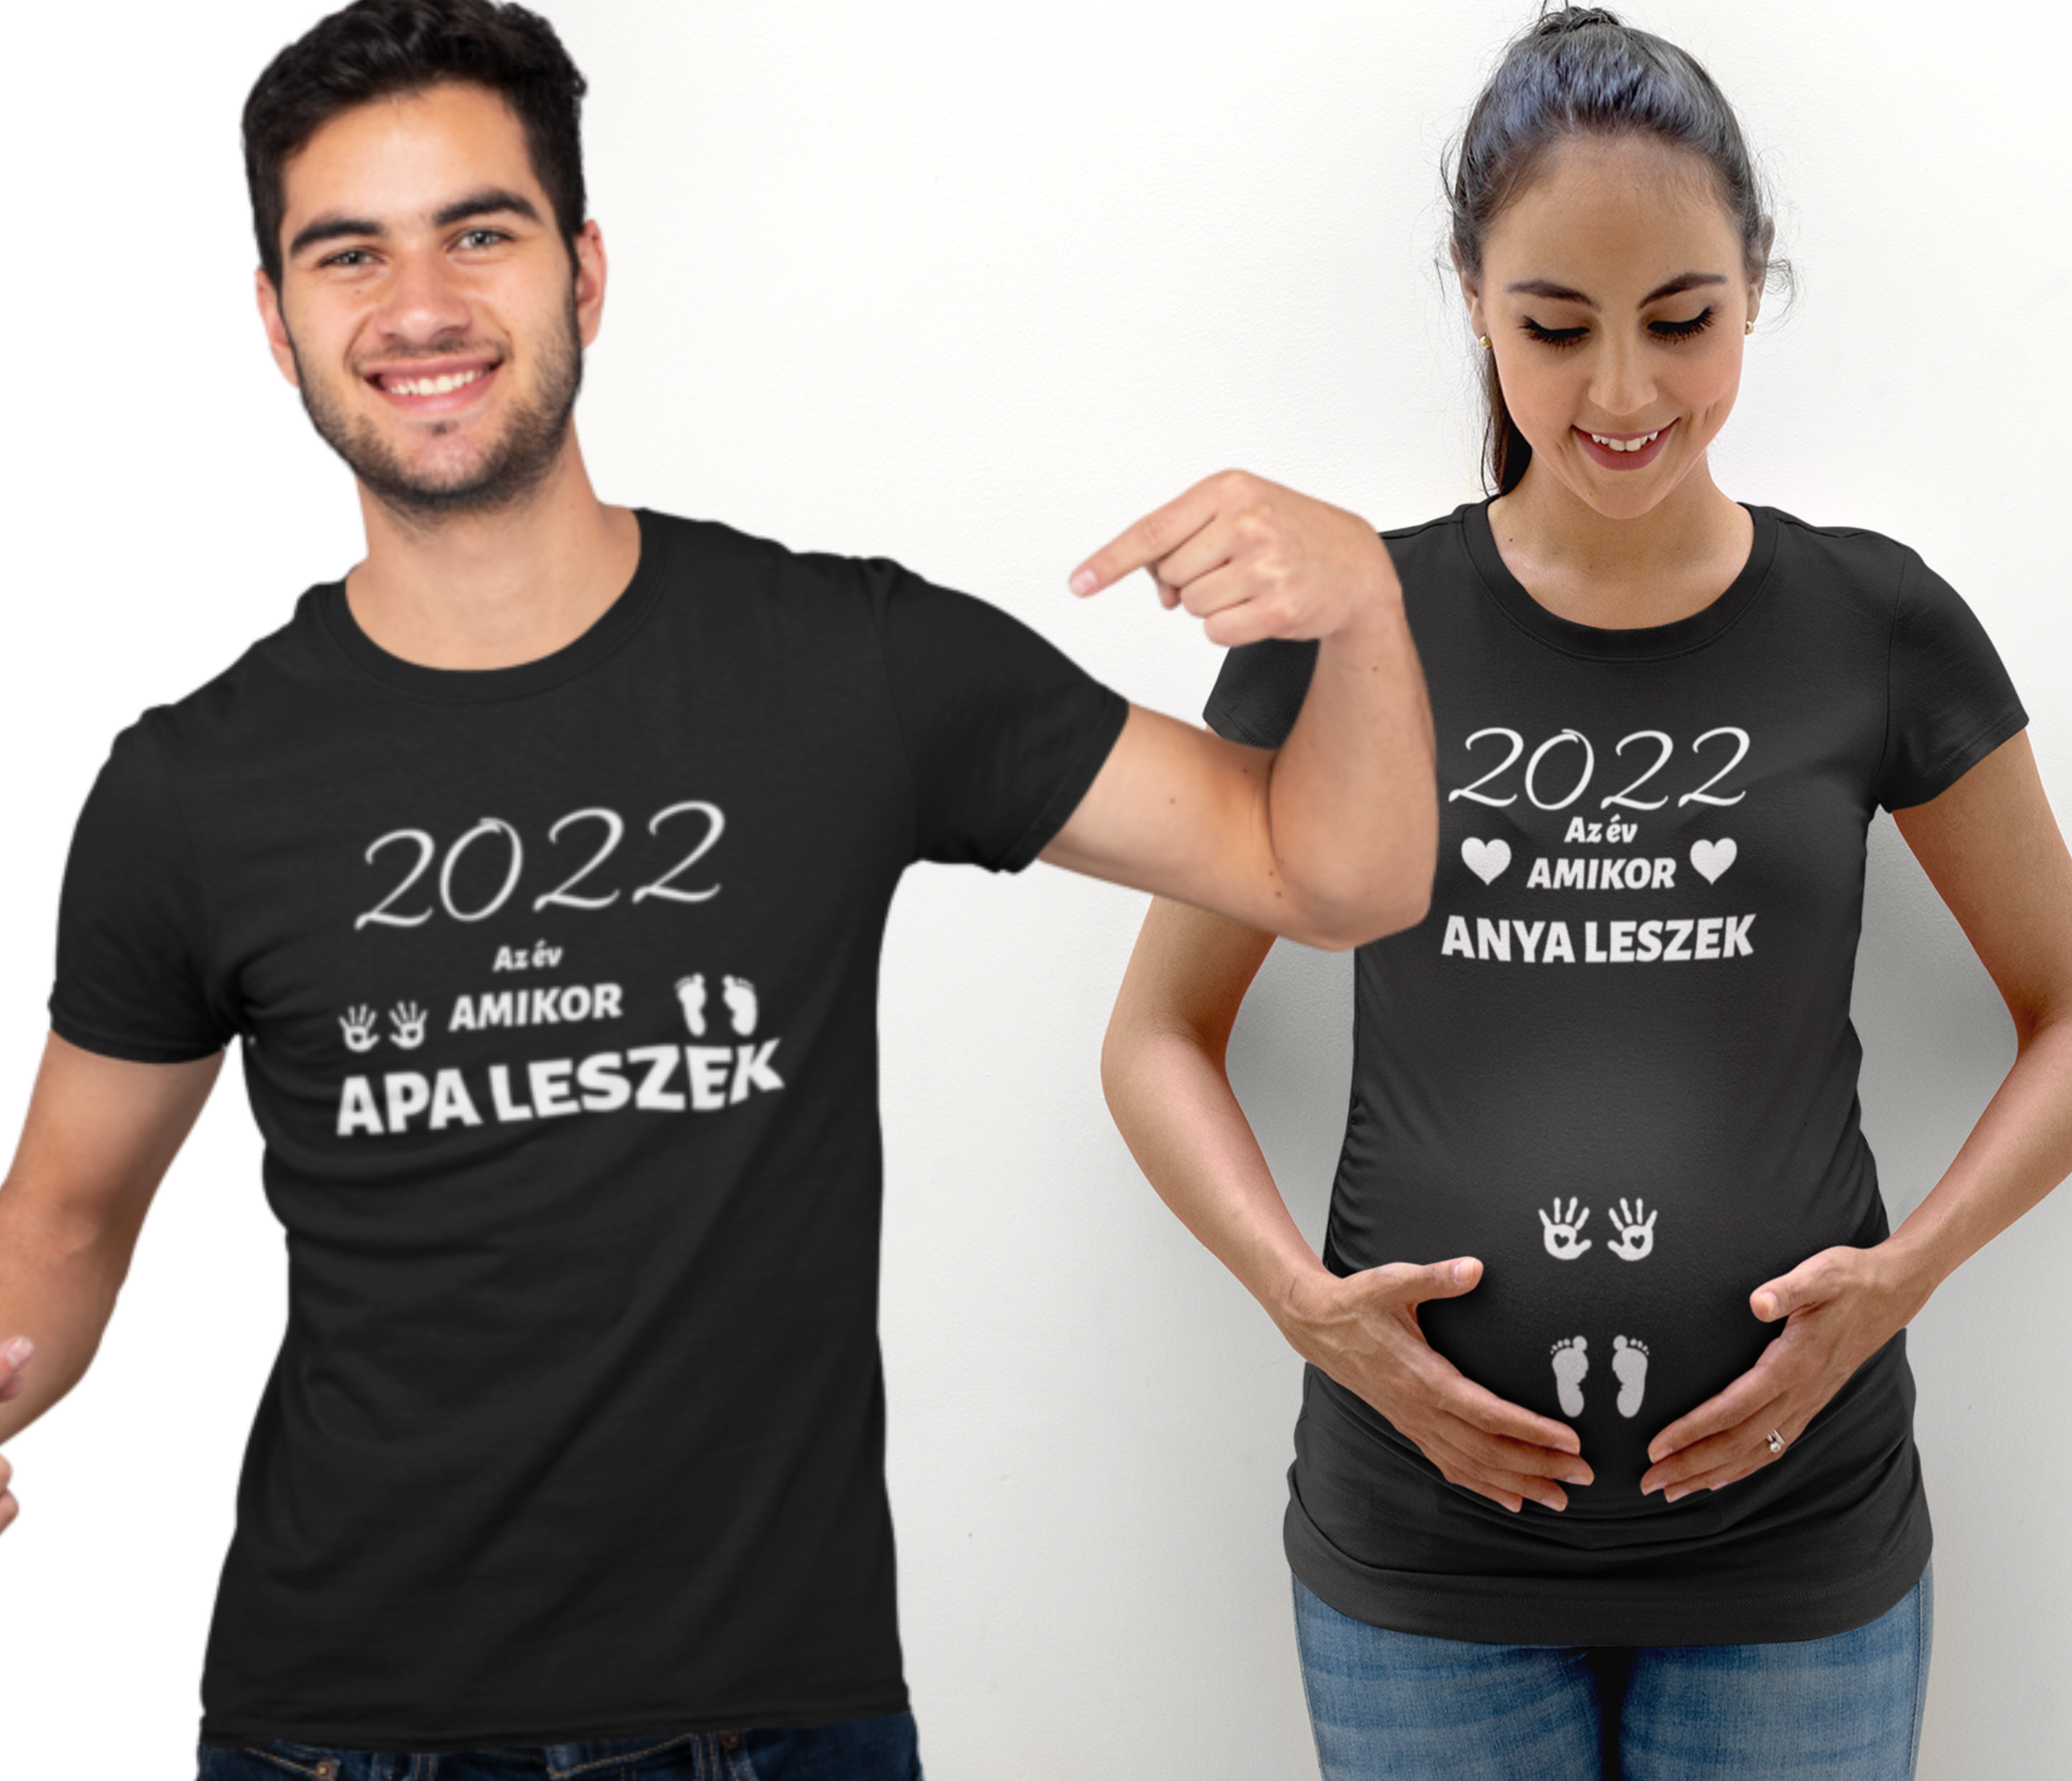 2022 Az év amikor apa leszek/2022 Az év amikor anya leszek  (2 db póló)